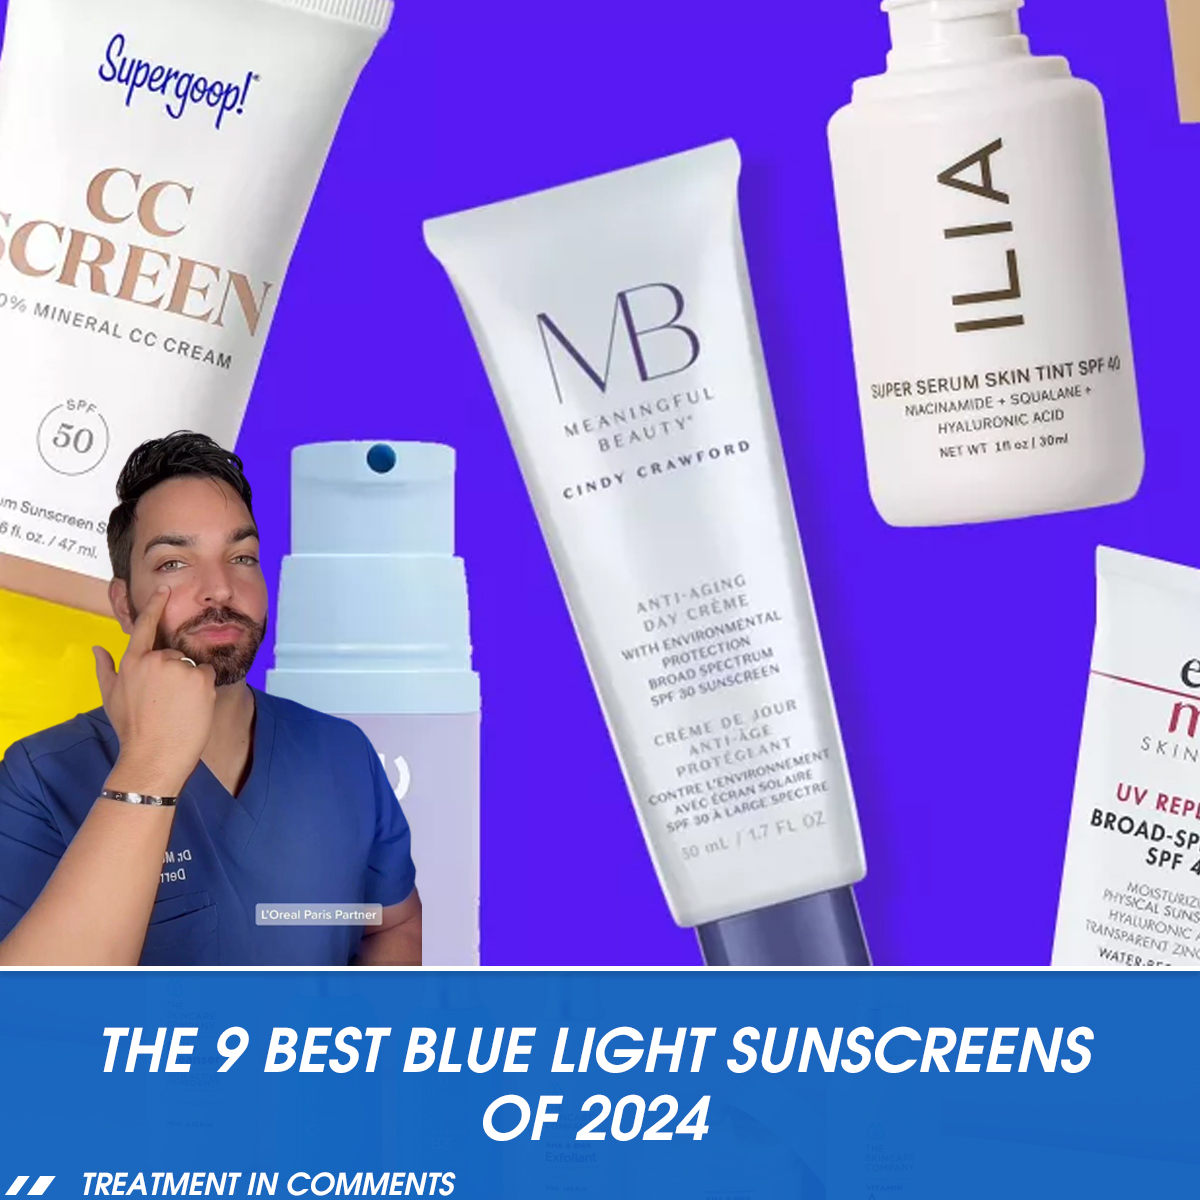 The 9 Best Blue Light Sunscreens of 2024